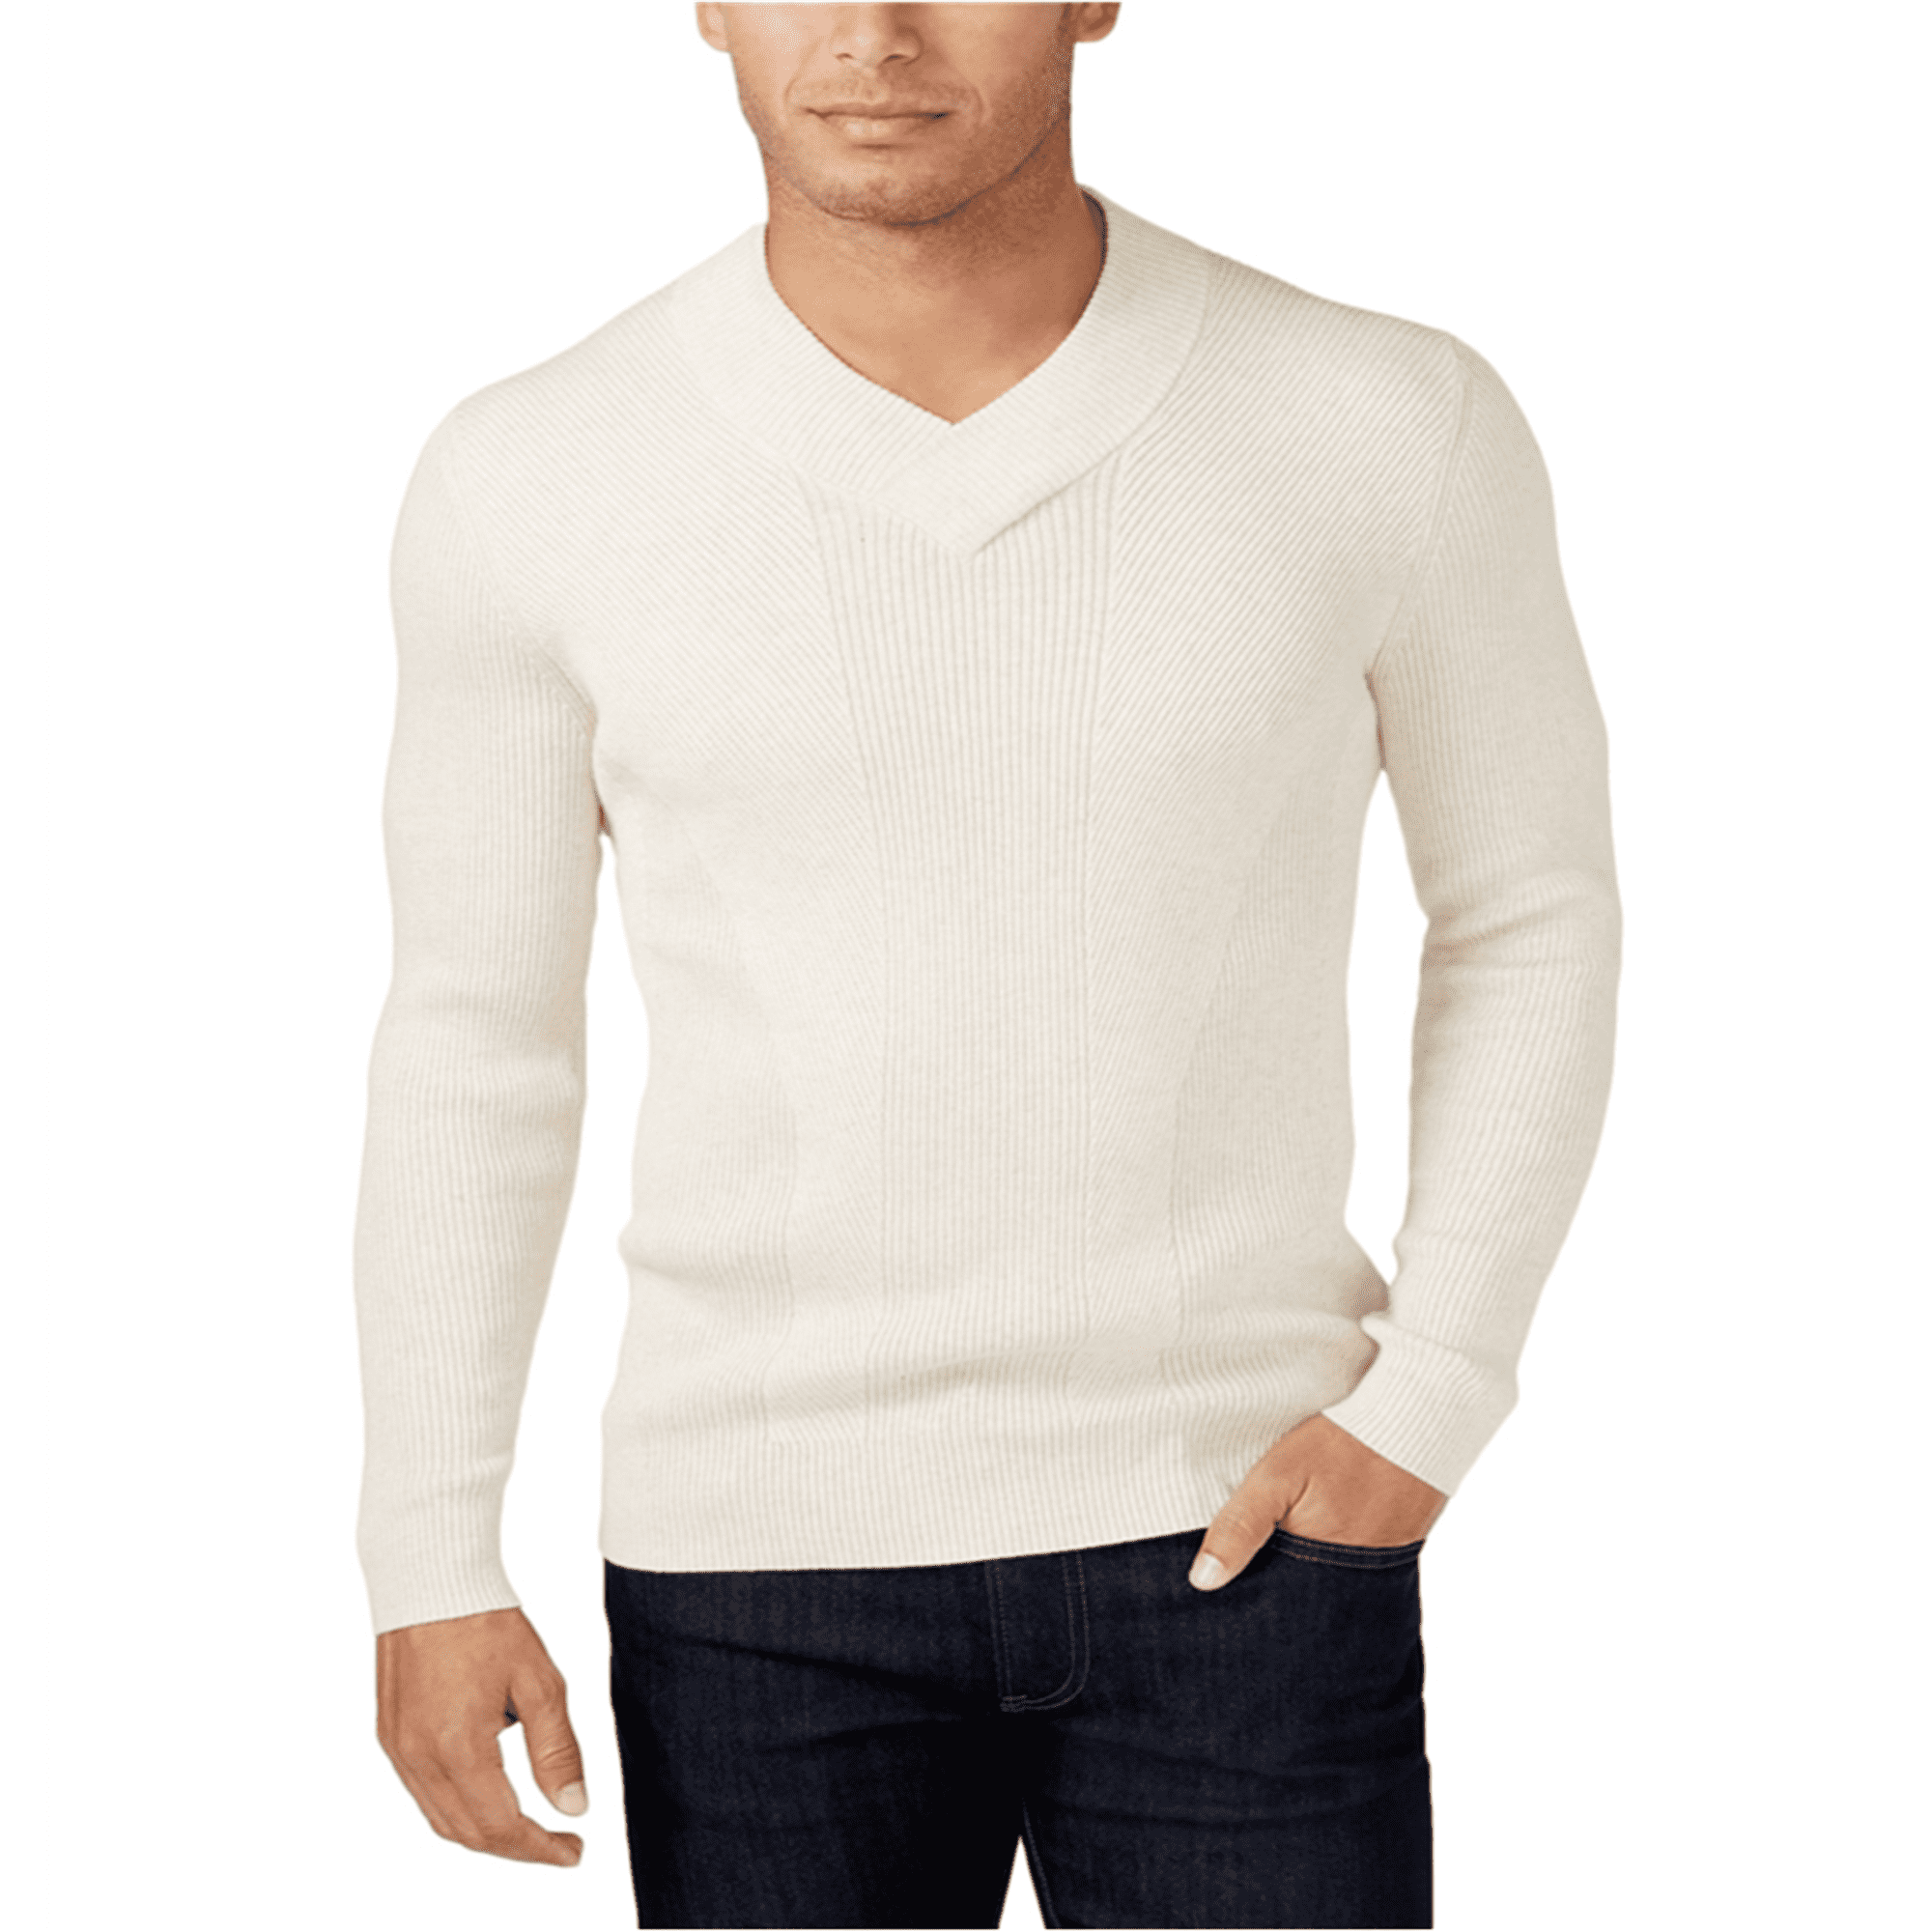 Sweater Pullover C. Redondo Hombre Importado Algodón Moda